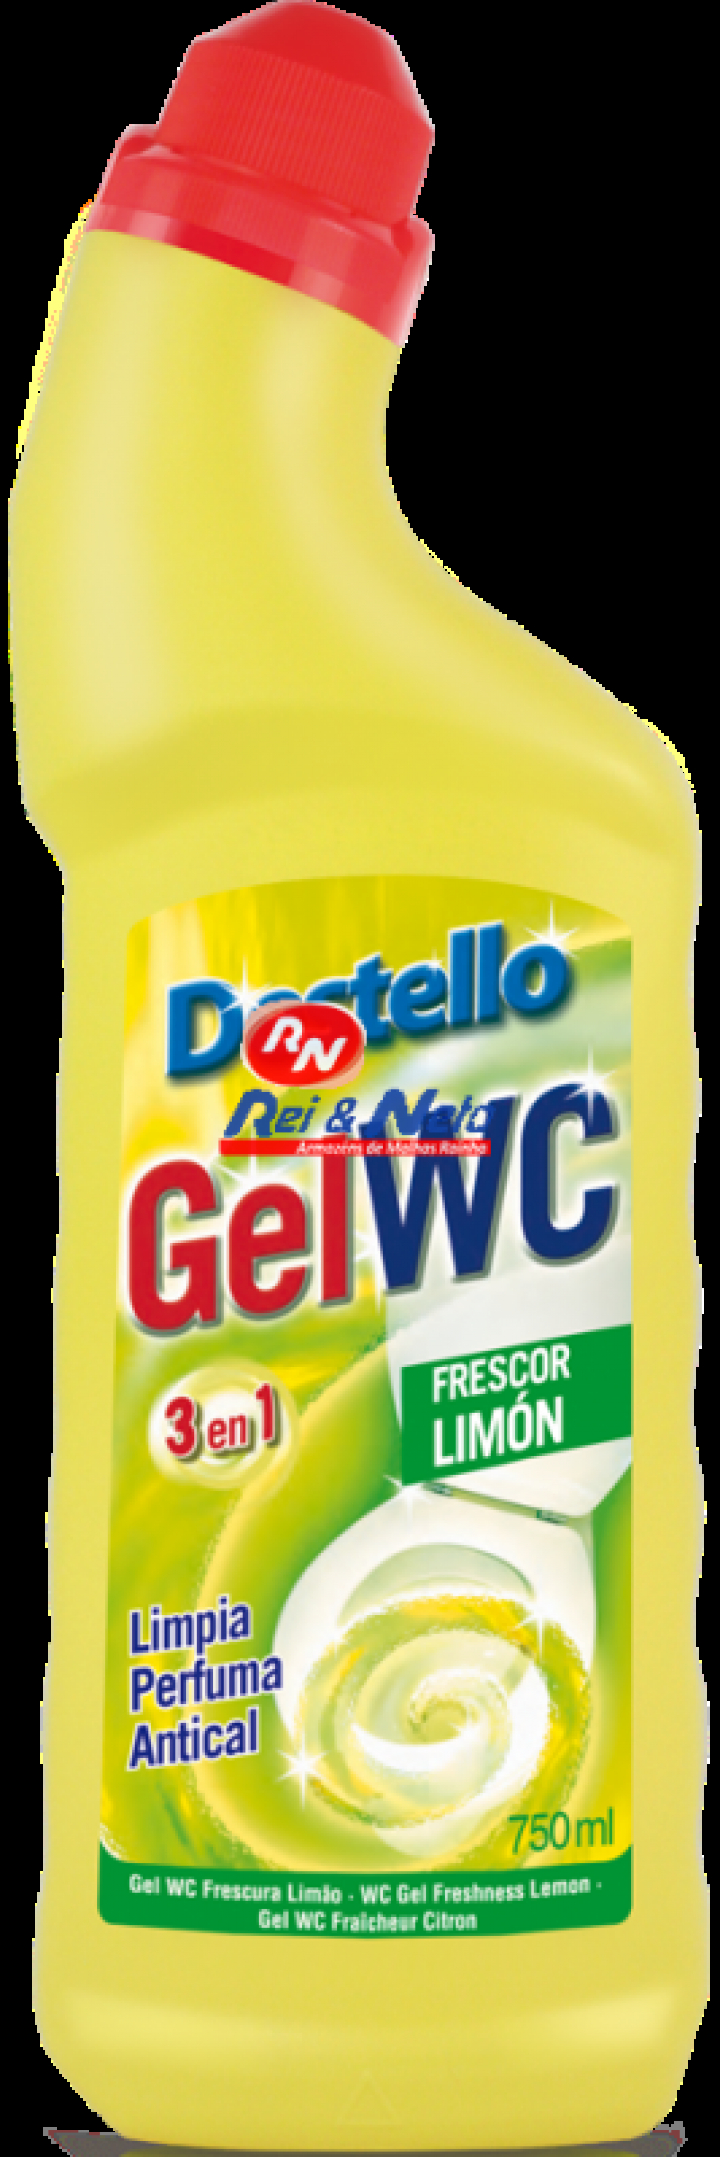 Detergente de wc em gel com lixívia 3 em 1 (limpa, perfuma e anti calcário) com aroma a limão 750ml Destello